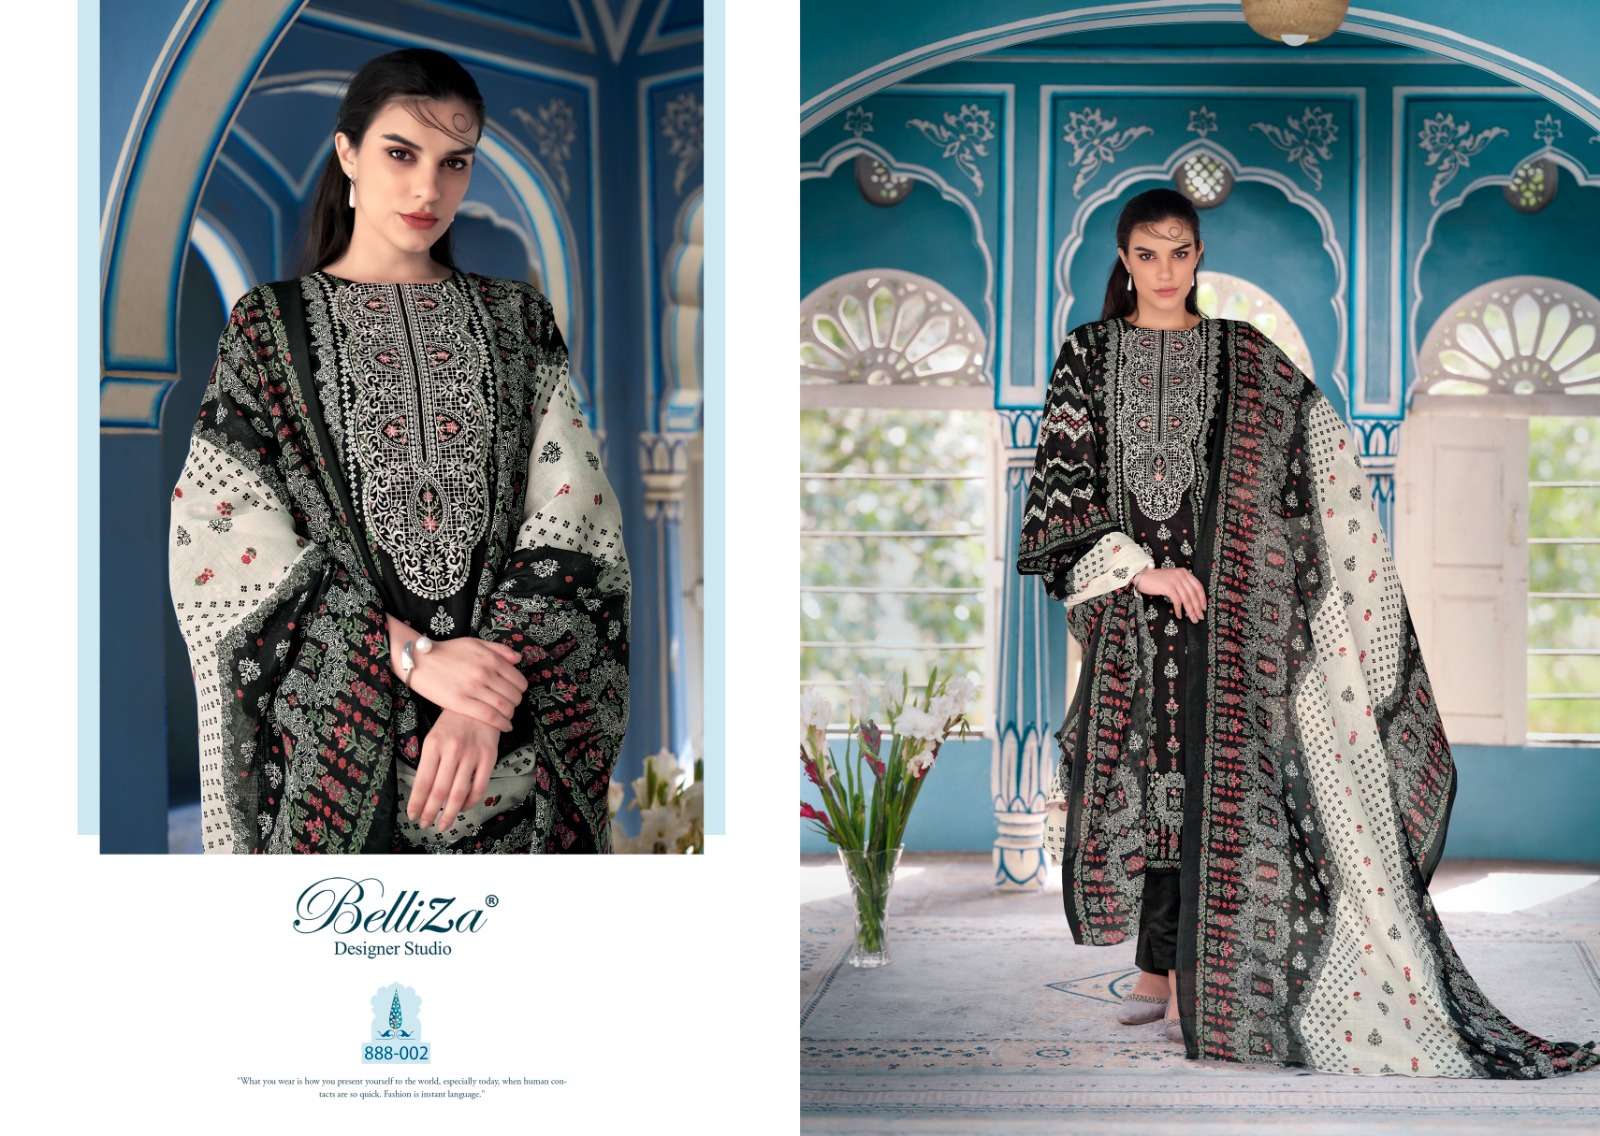 Belliza Naira Vol 40 Cotton Digital Printed Dress Material Wholesale catalog